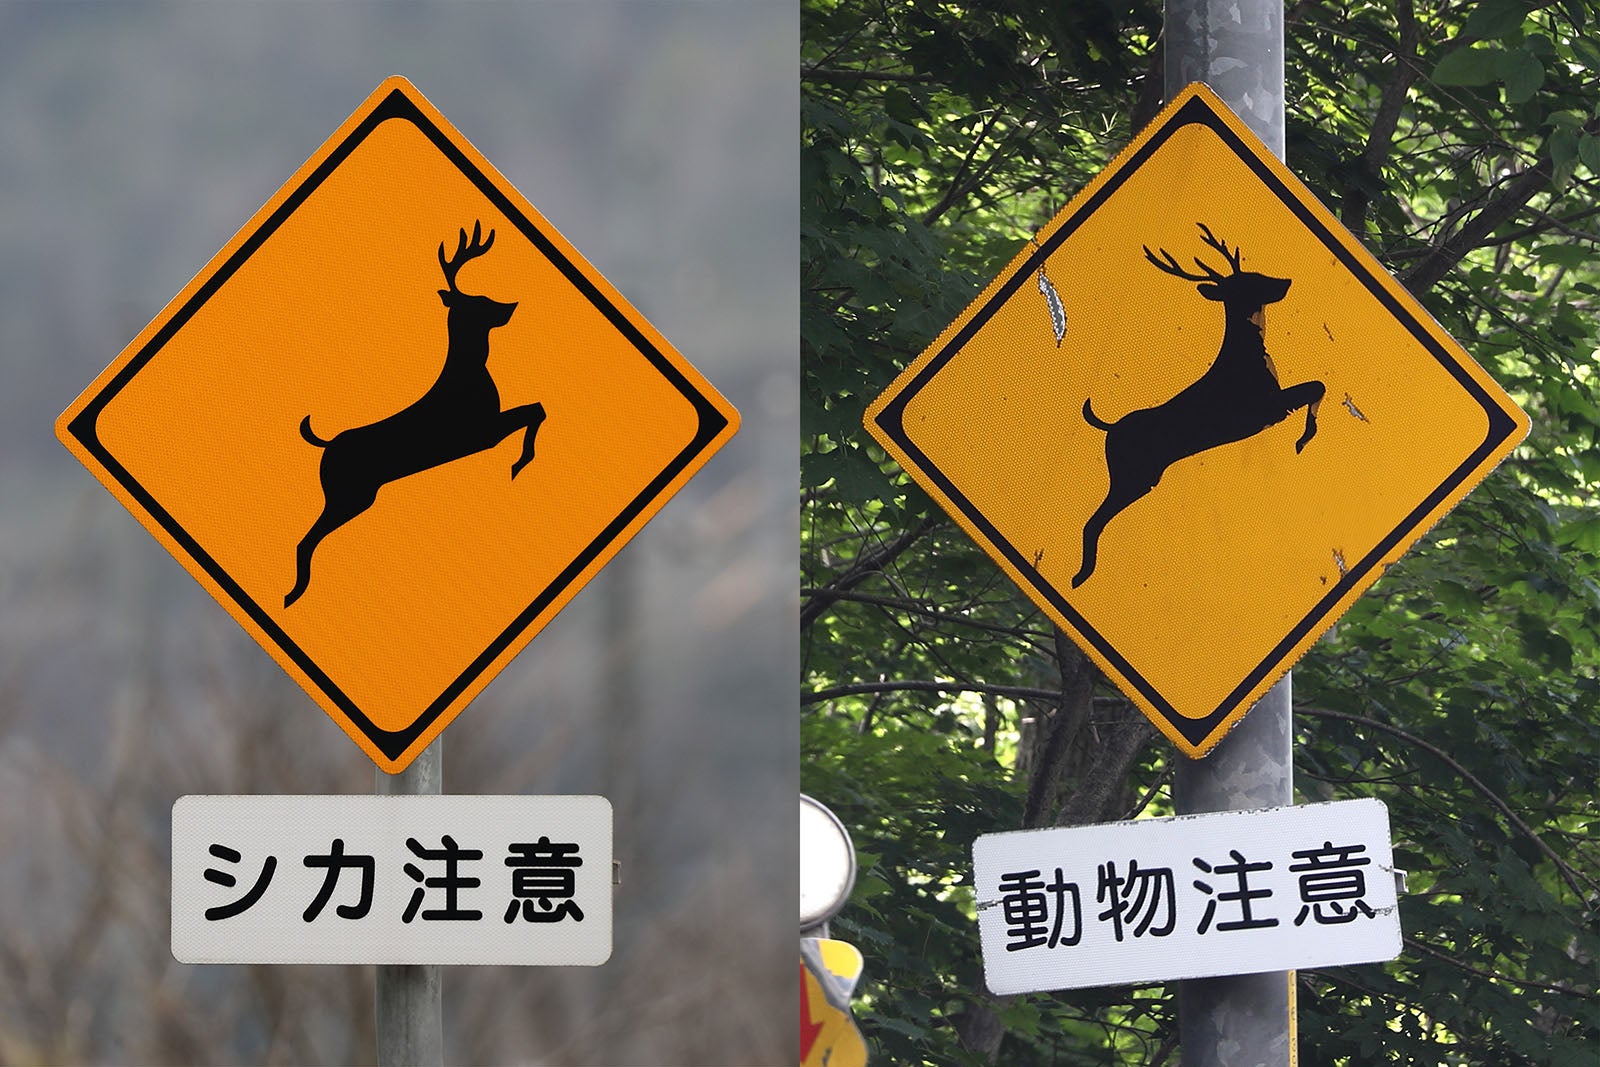 動物注意の標識として一般的な、シカの標識